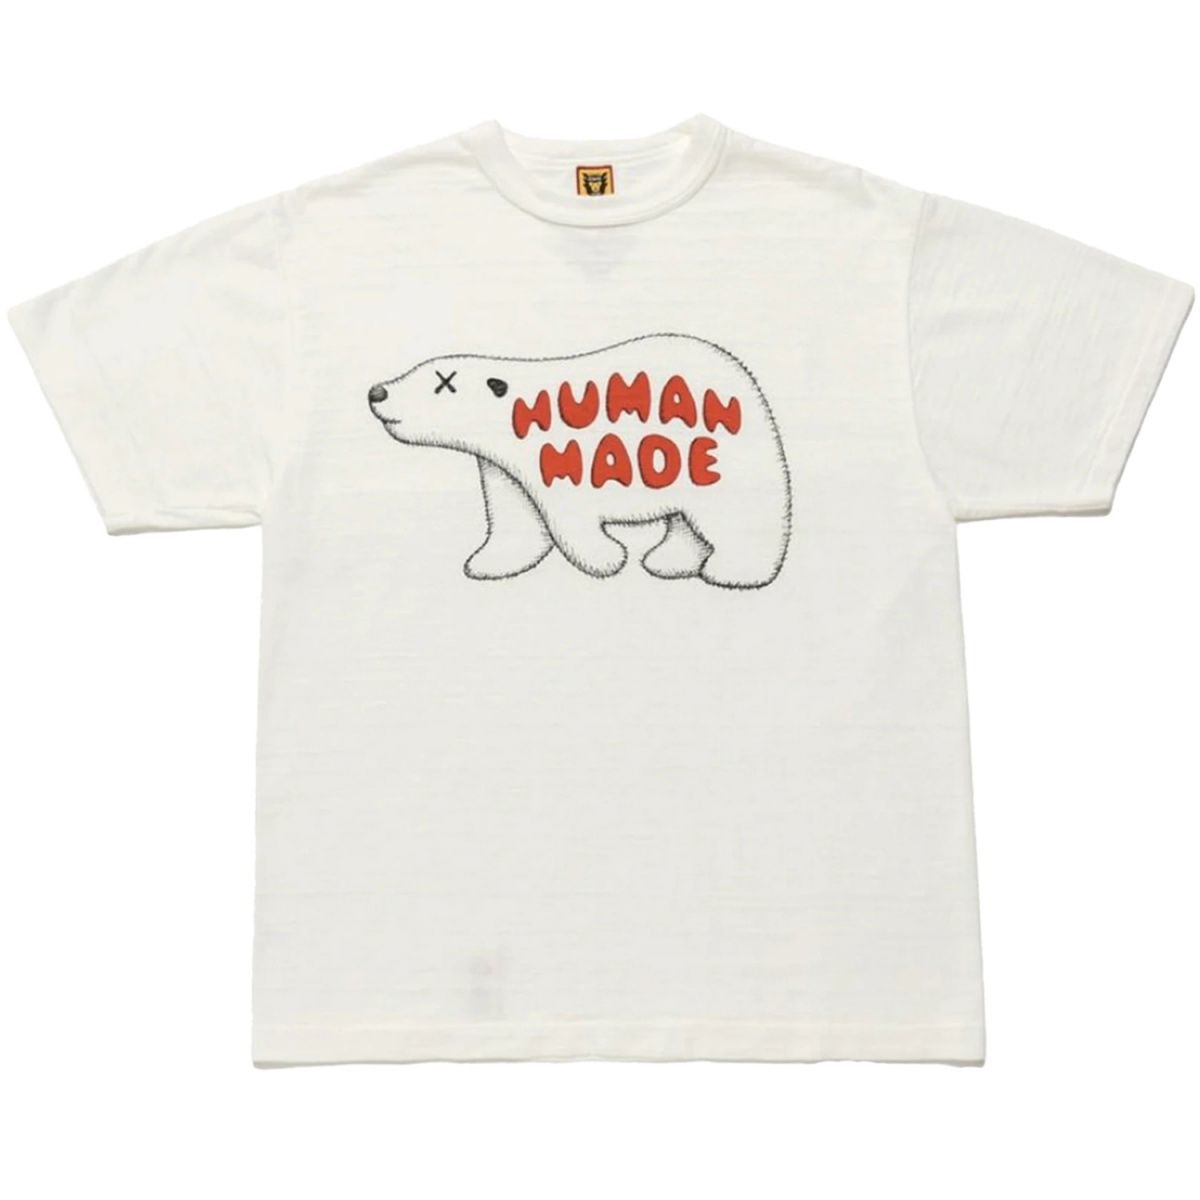 Customon Human Made Duck Men's T-Shirt White / S